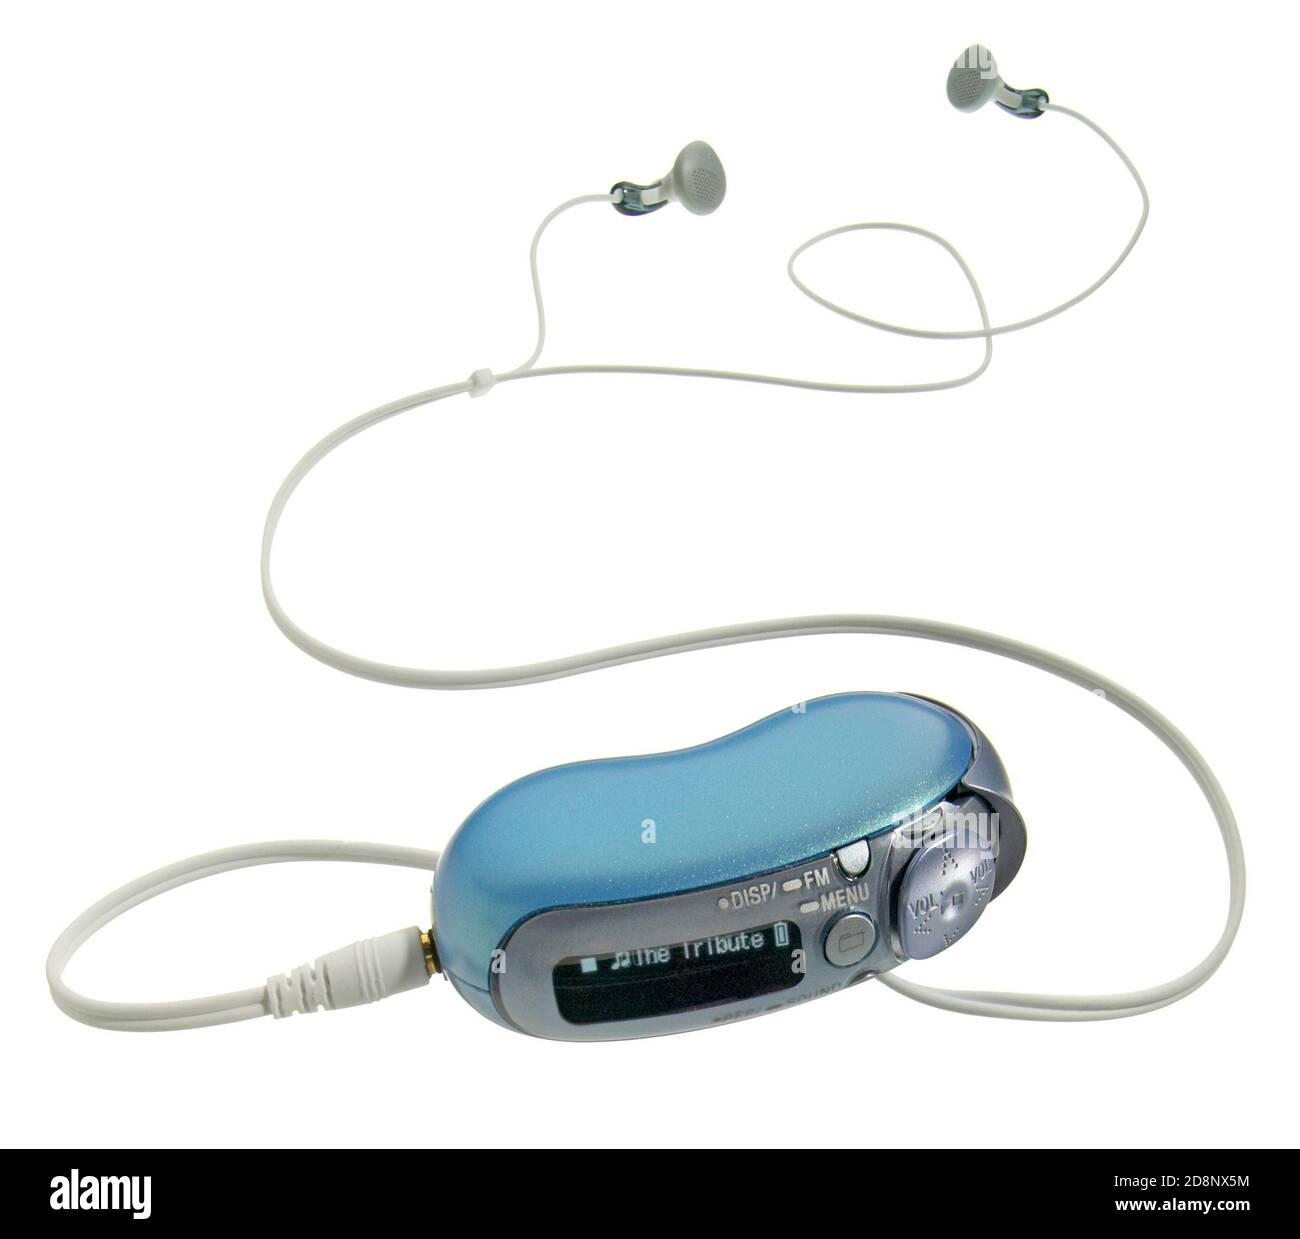 https://c8.alamy.com/compes/2d8nx5m/funciona-con-el-reproductor-de-mp3-azul-de-sony-con-auriculares-fotografiados-un-fondo-blanco-2d8nx5m.jpg